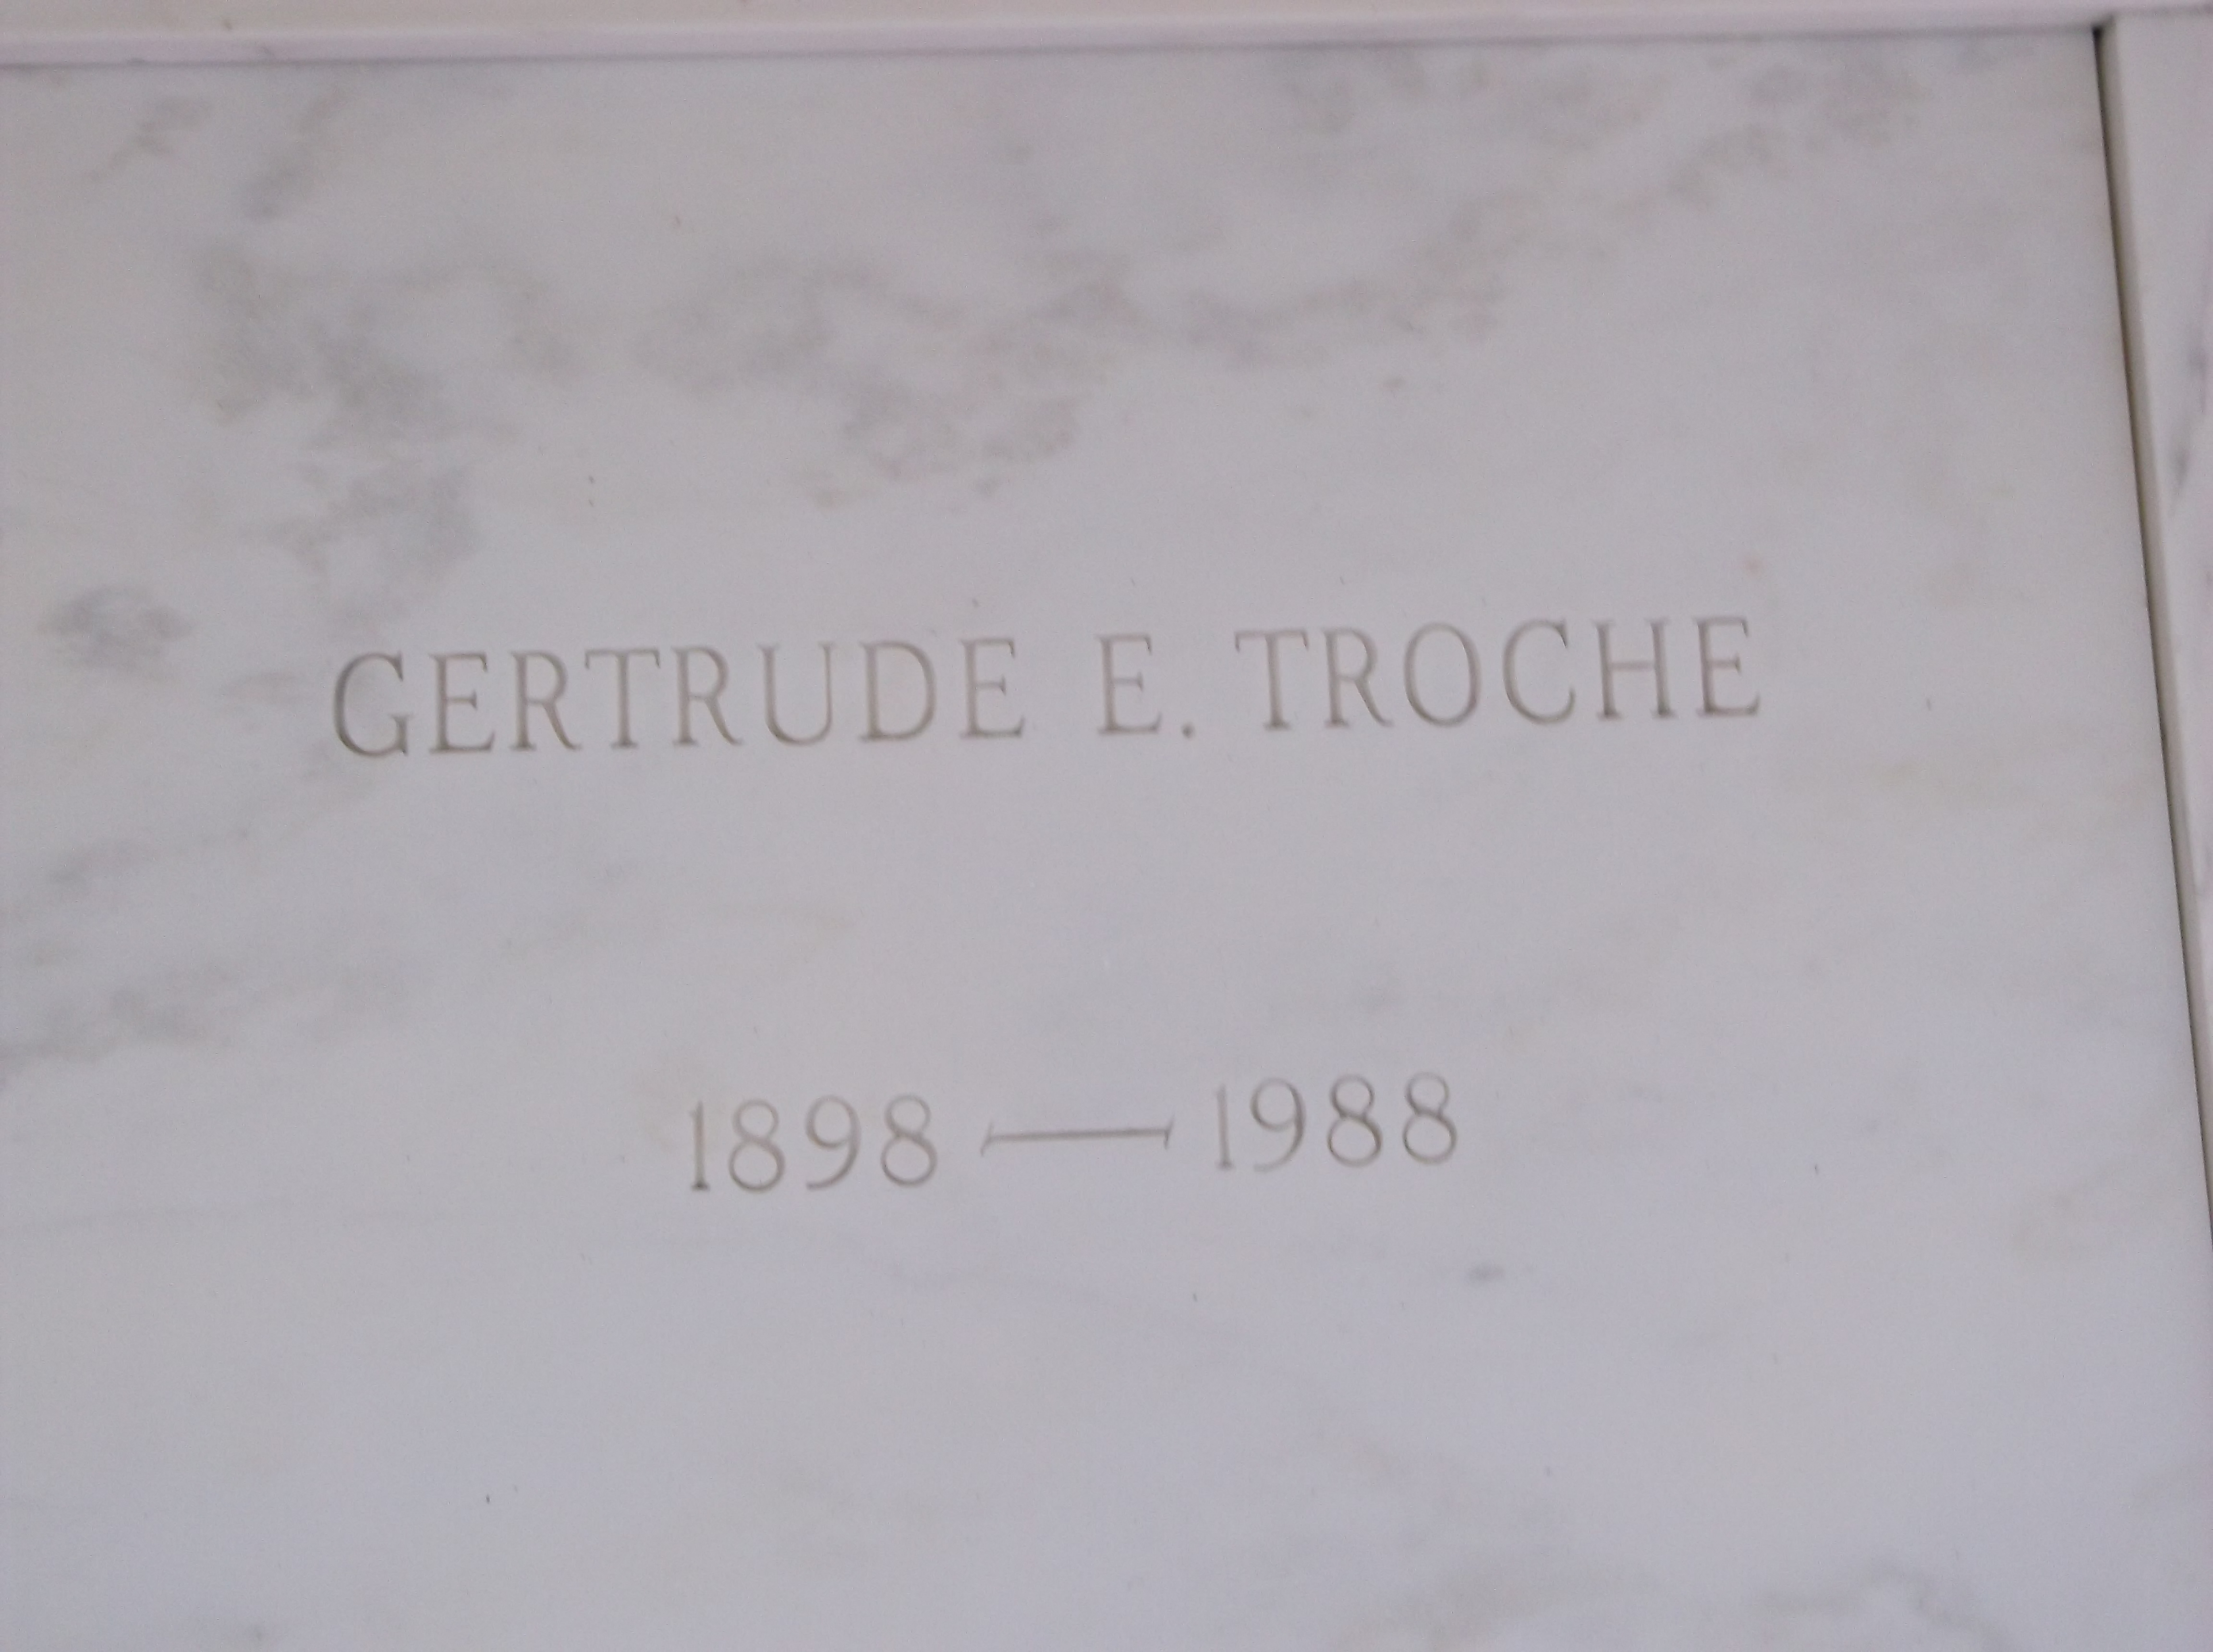 Gertrude E Troche